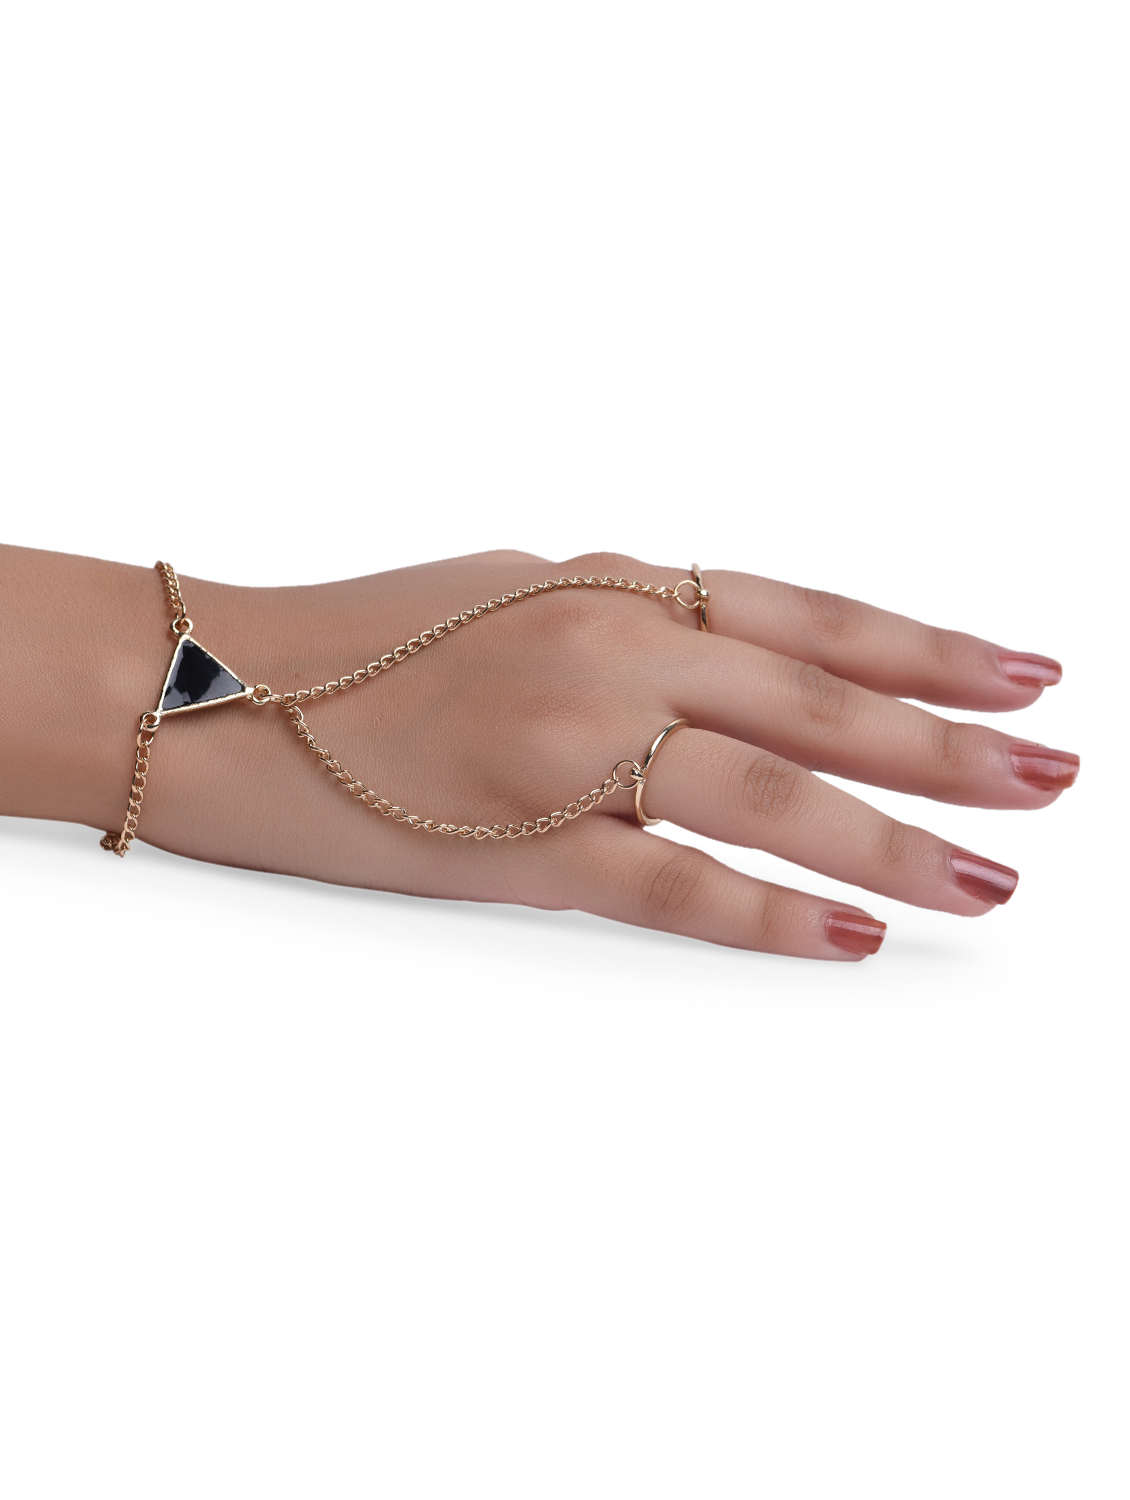 Vintage Punk Scorpion Tassel Chain Ring | Accessories Women Jewelry Bracelet  - Bracelets - Aliexpress